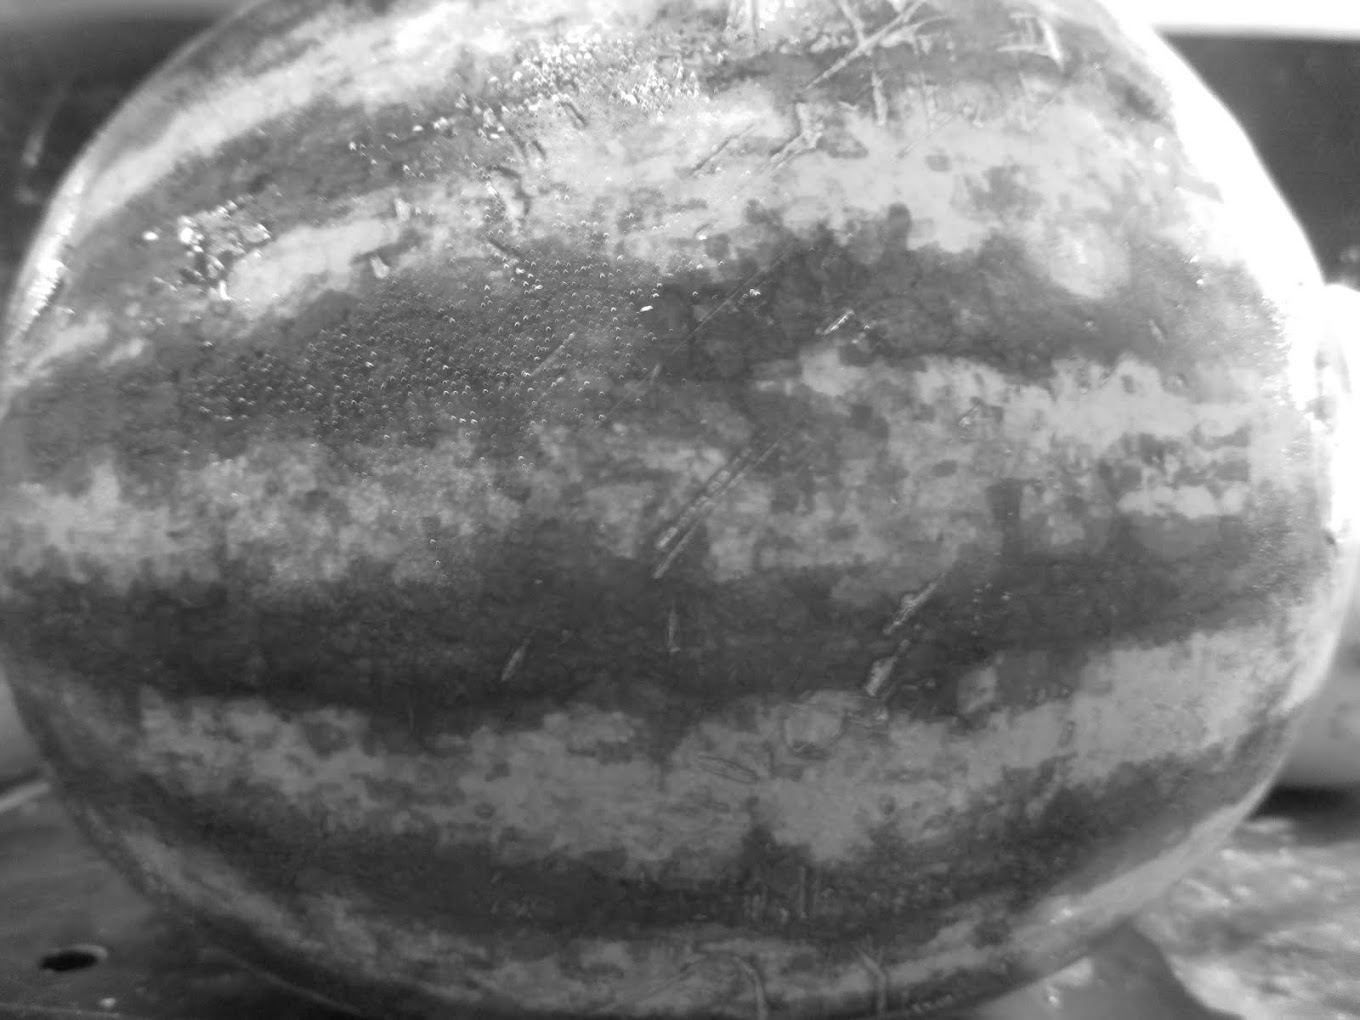 .CA - WATERMELON  -  watermelon for sale - new orleans - LA / USA - 2016